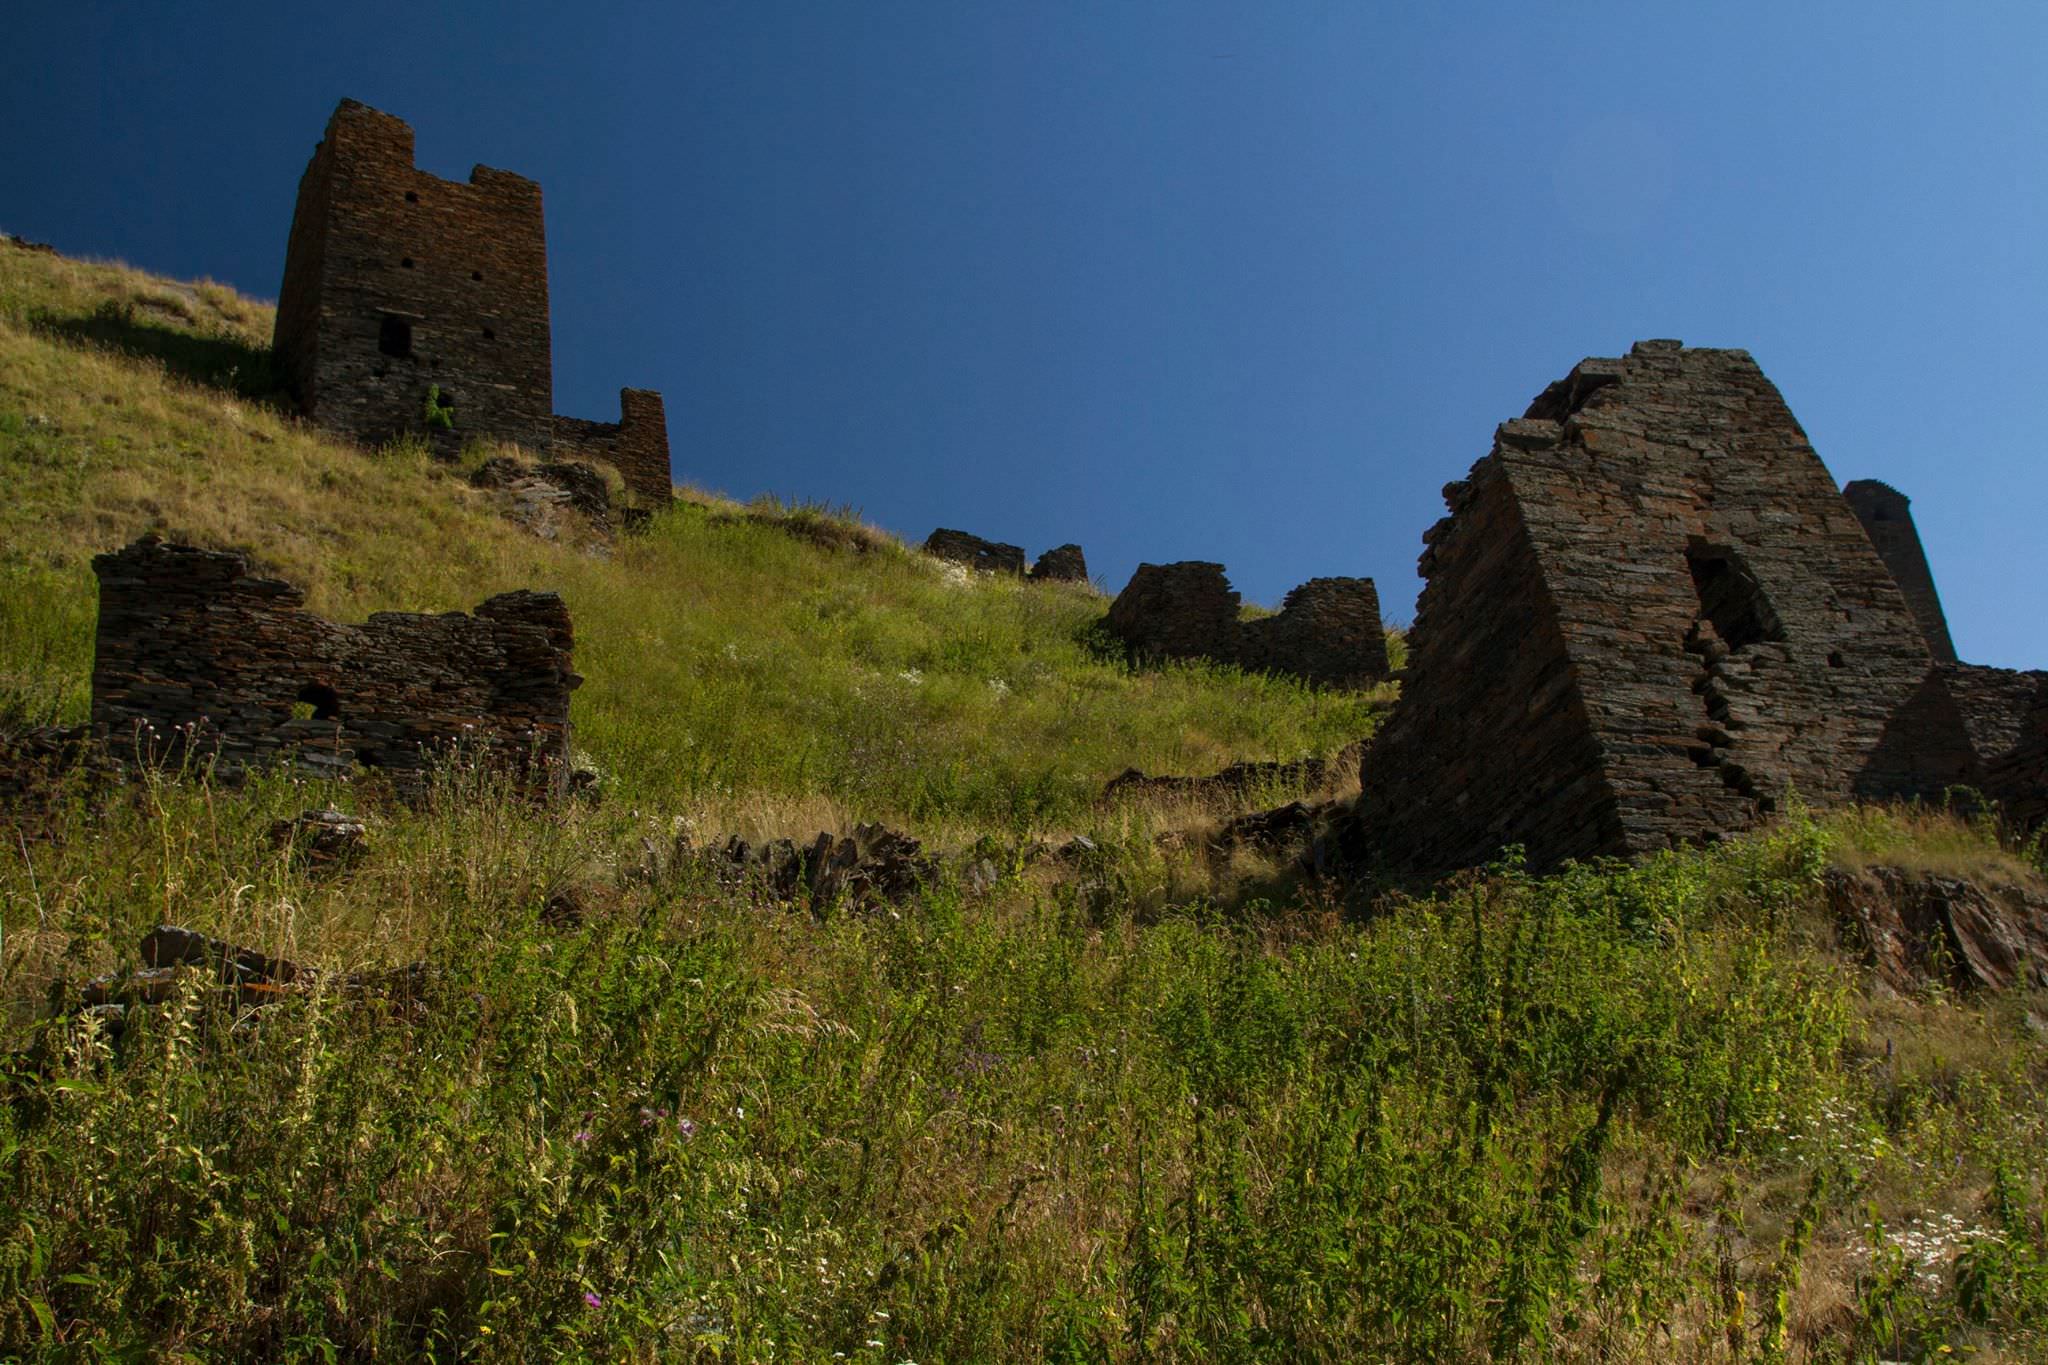 Abandoned village in Tusheti